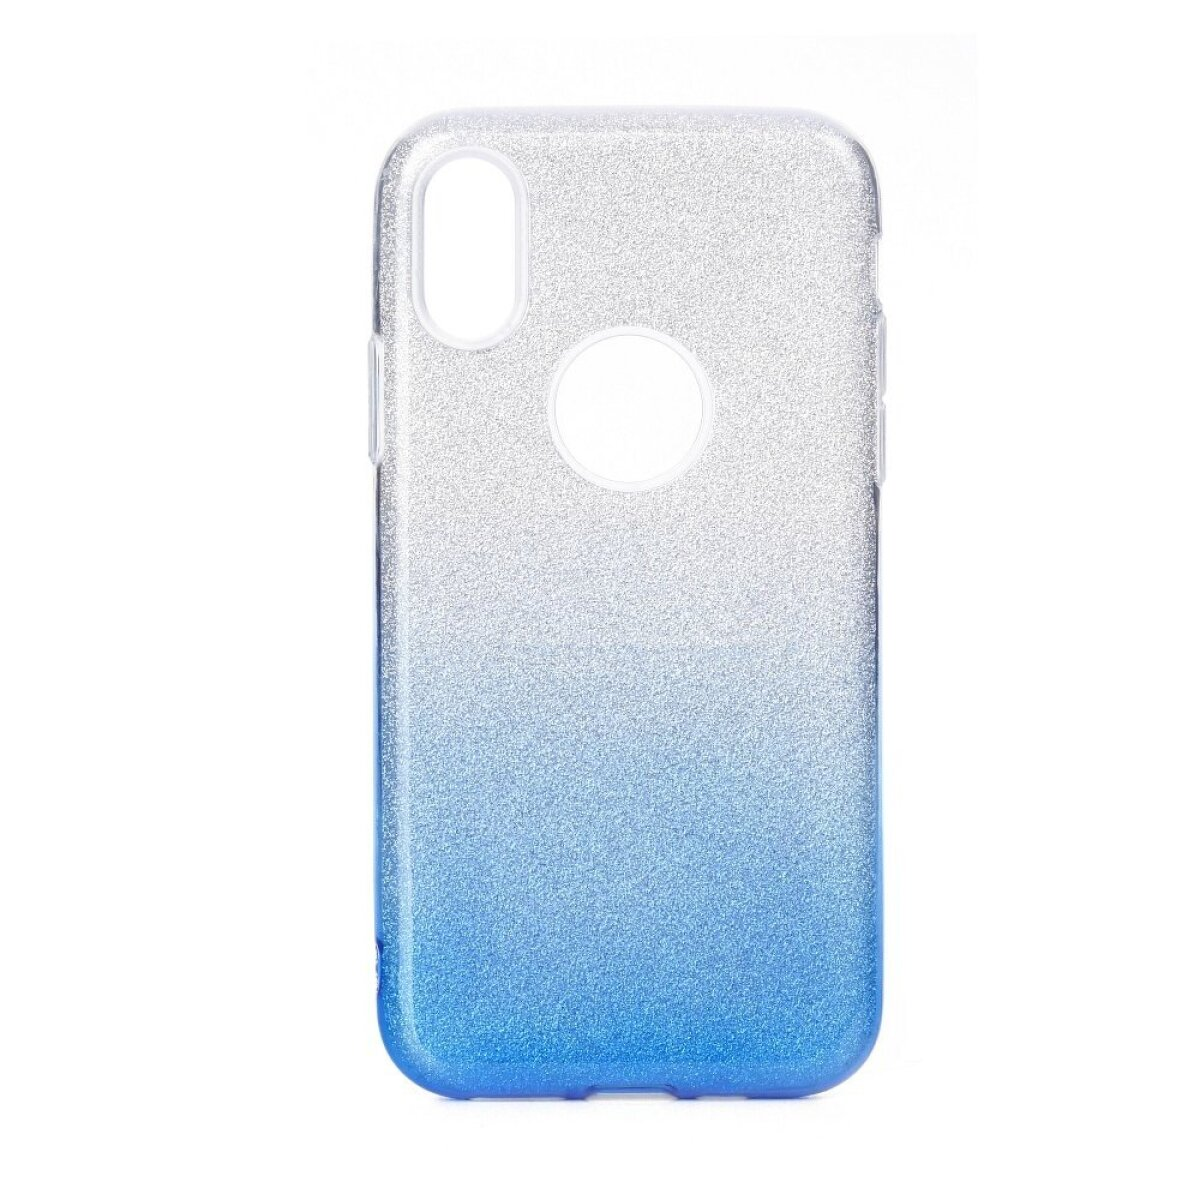 FORCELL Full Blau Galaxy Samsung, Galaxy SHINING Cover, A71, transparent/blau, A71